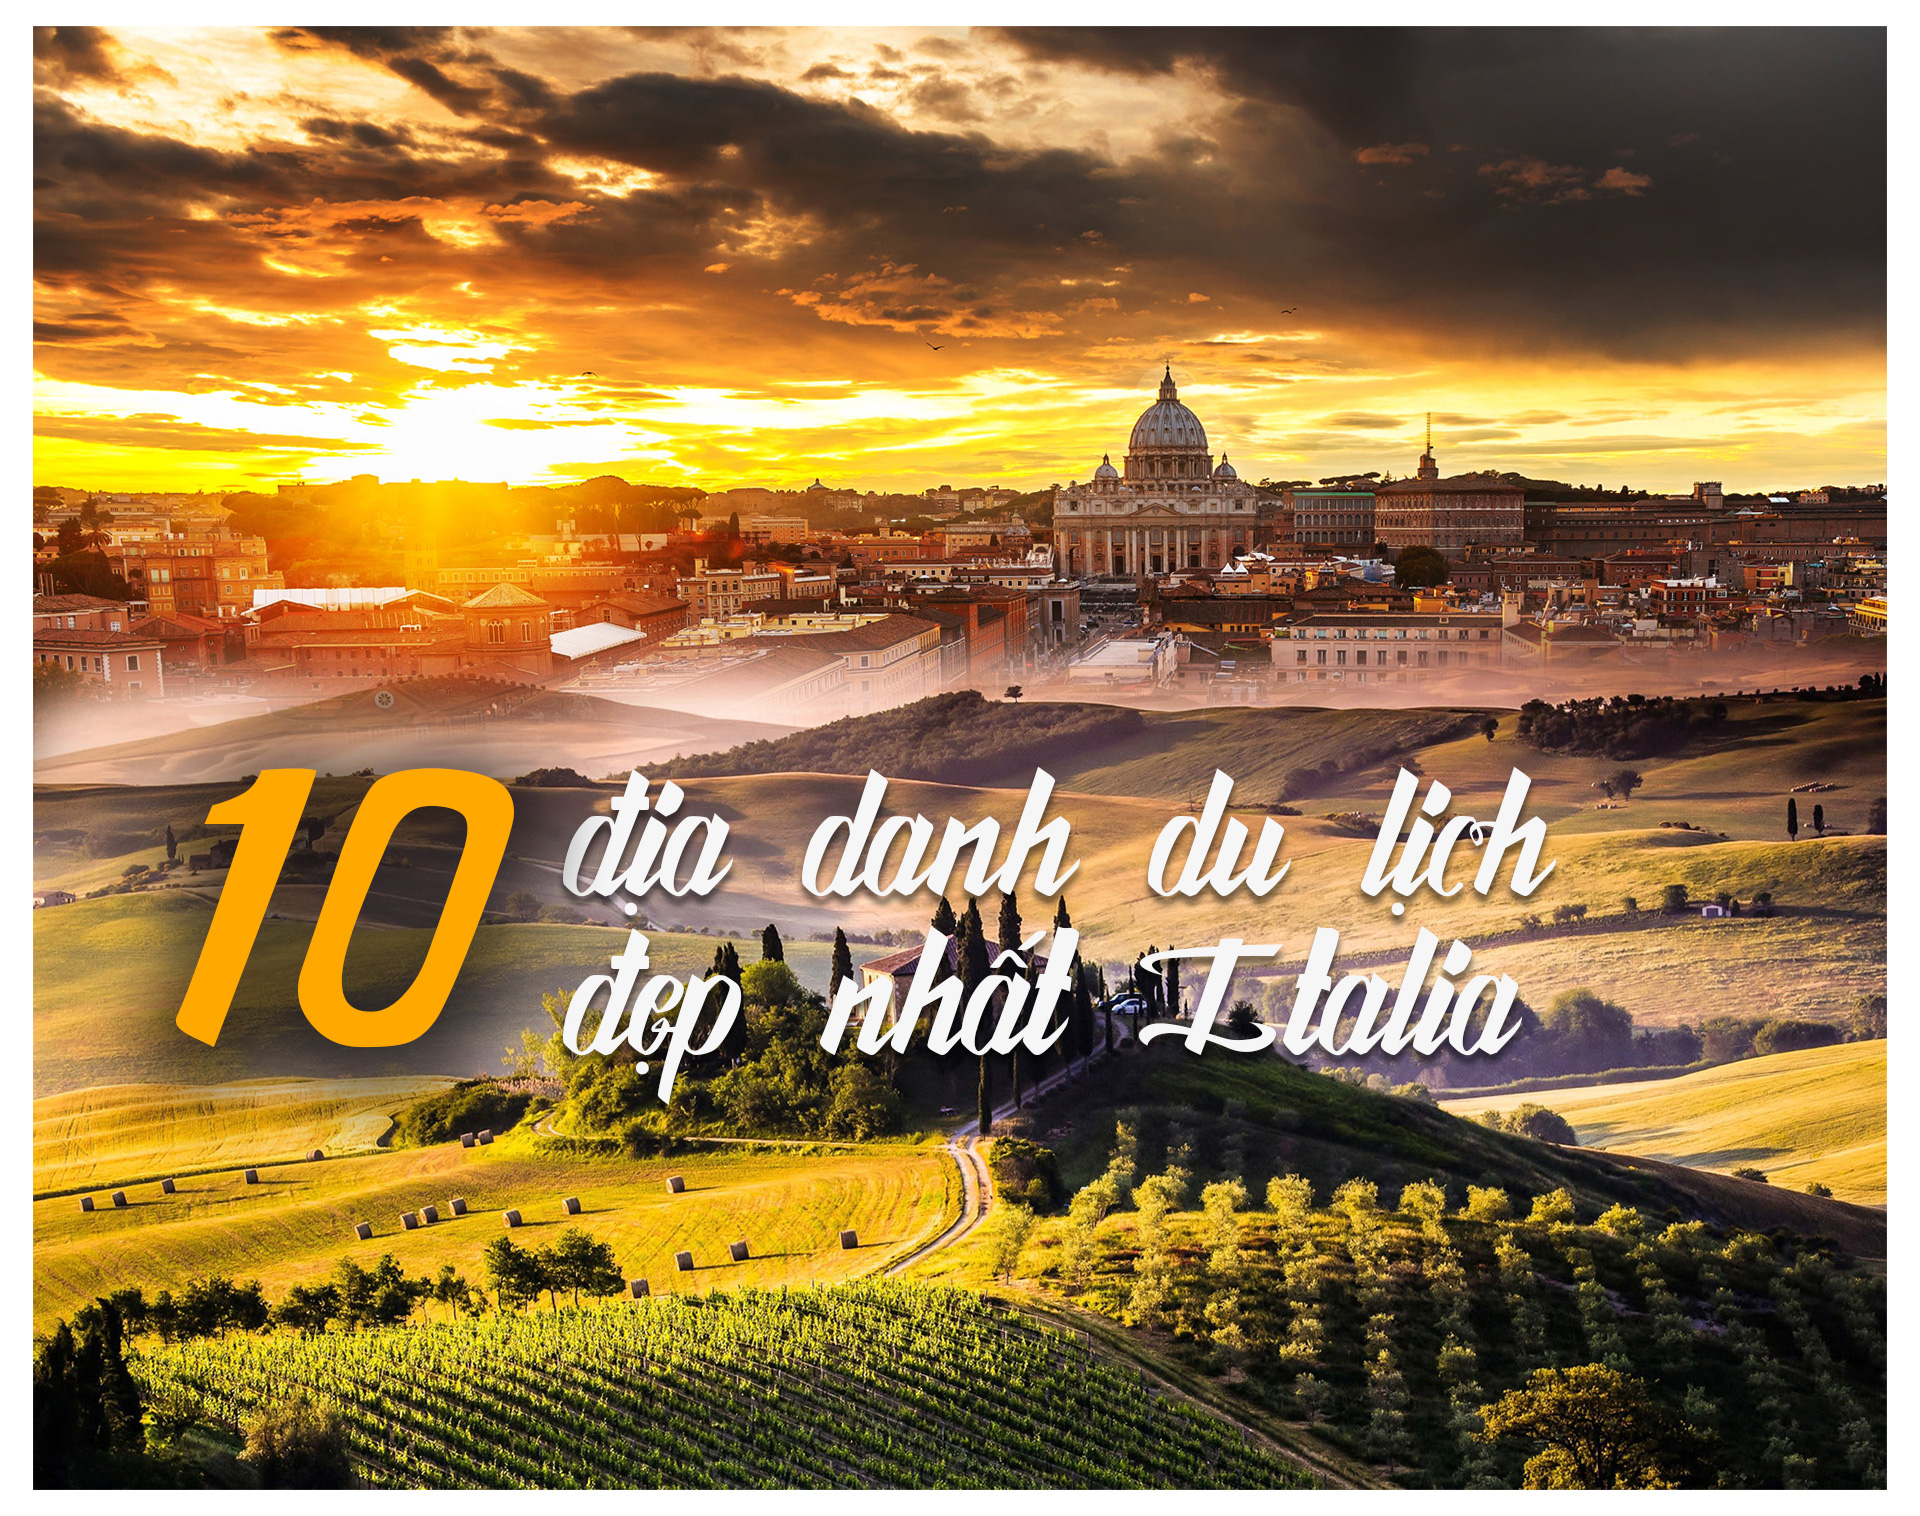 10 địa danh du lịch đẹp nhất Italia - 1